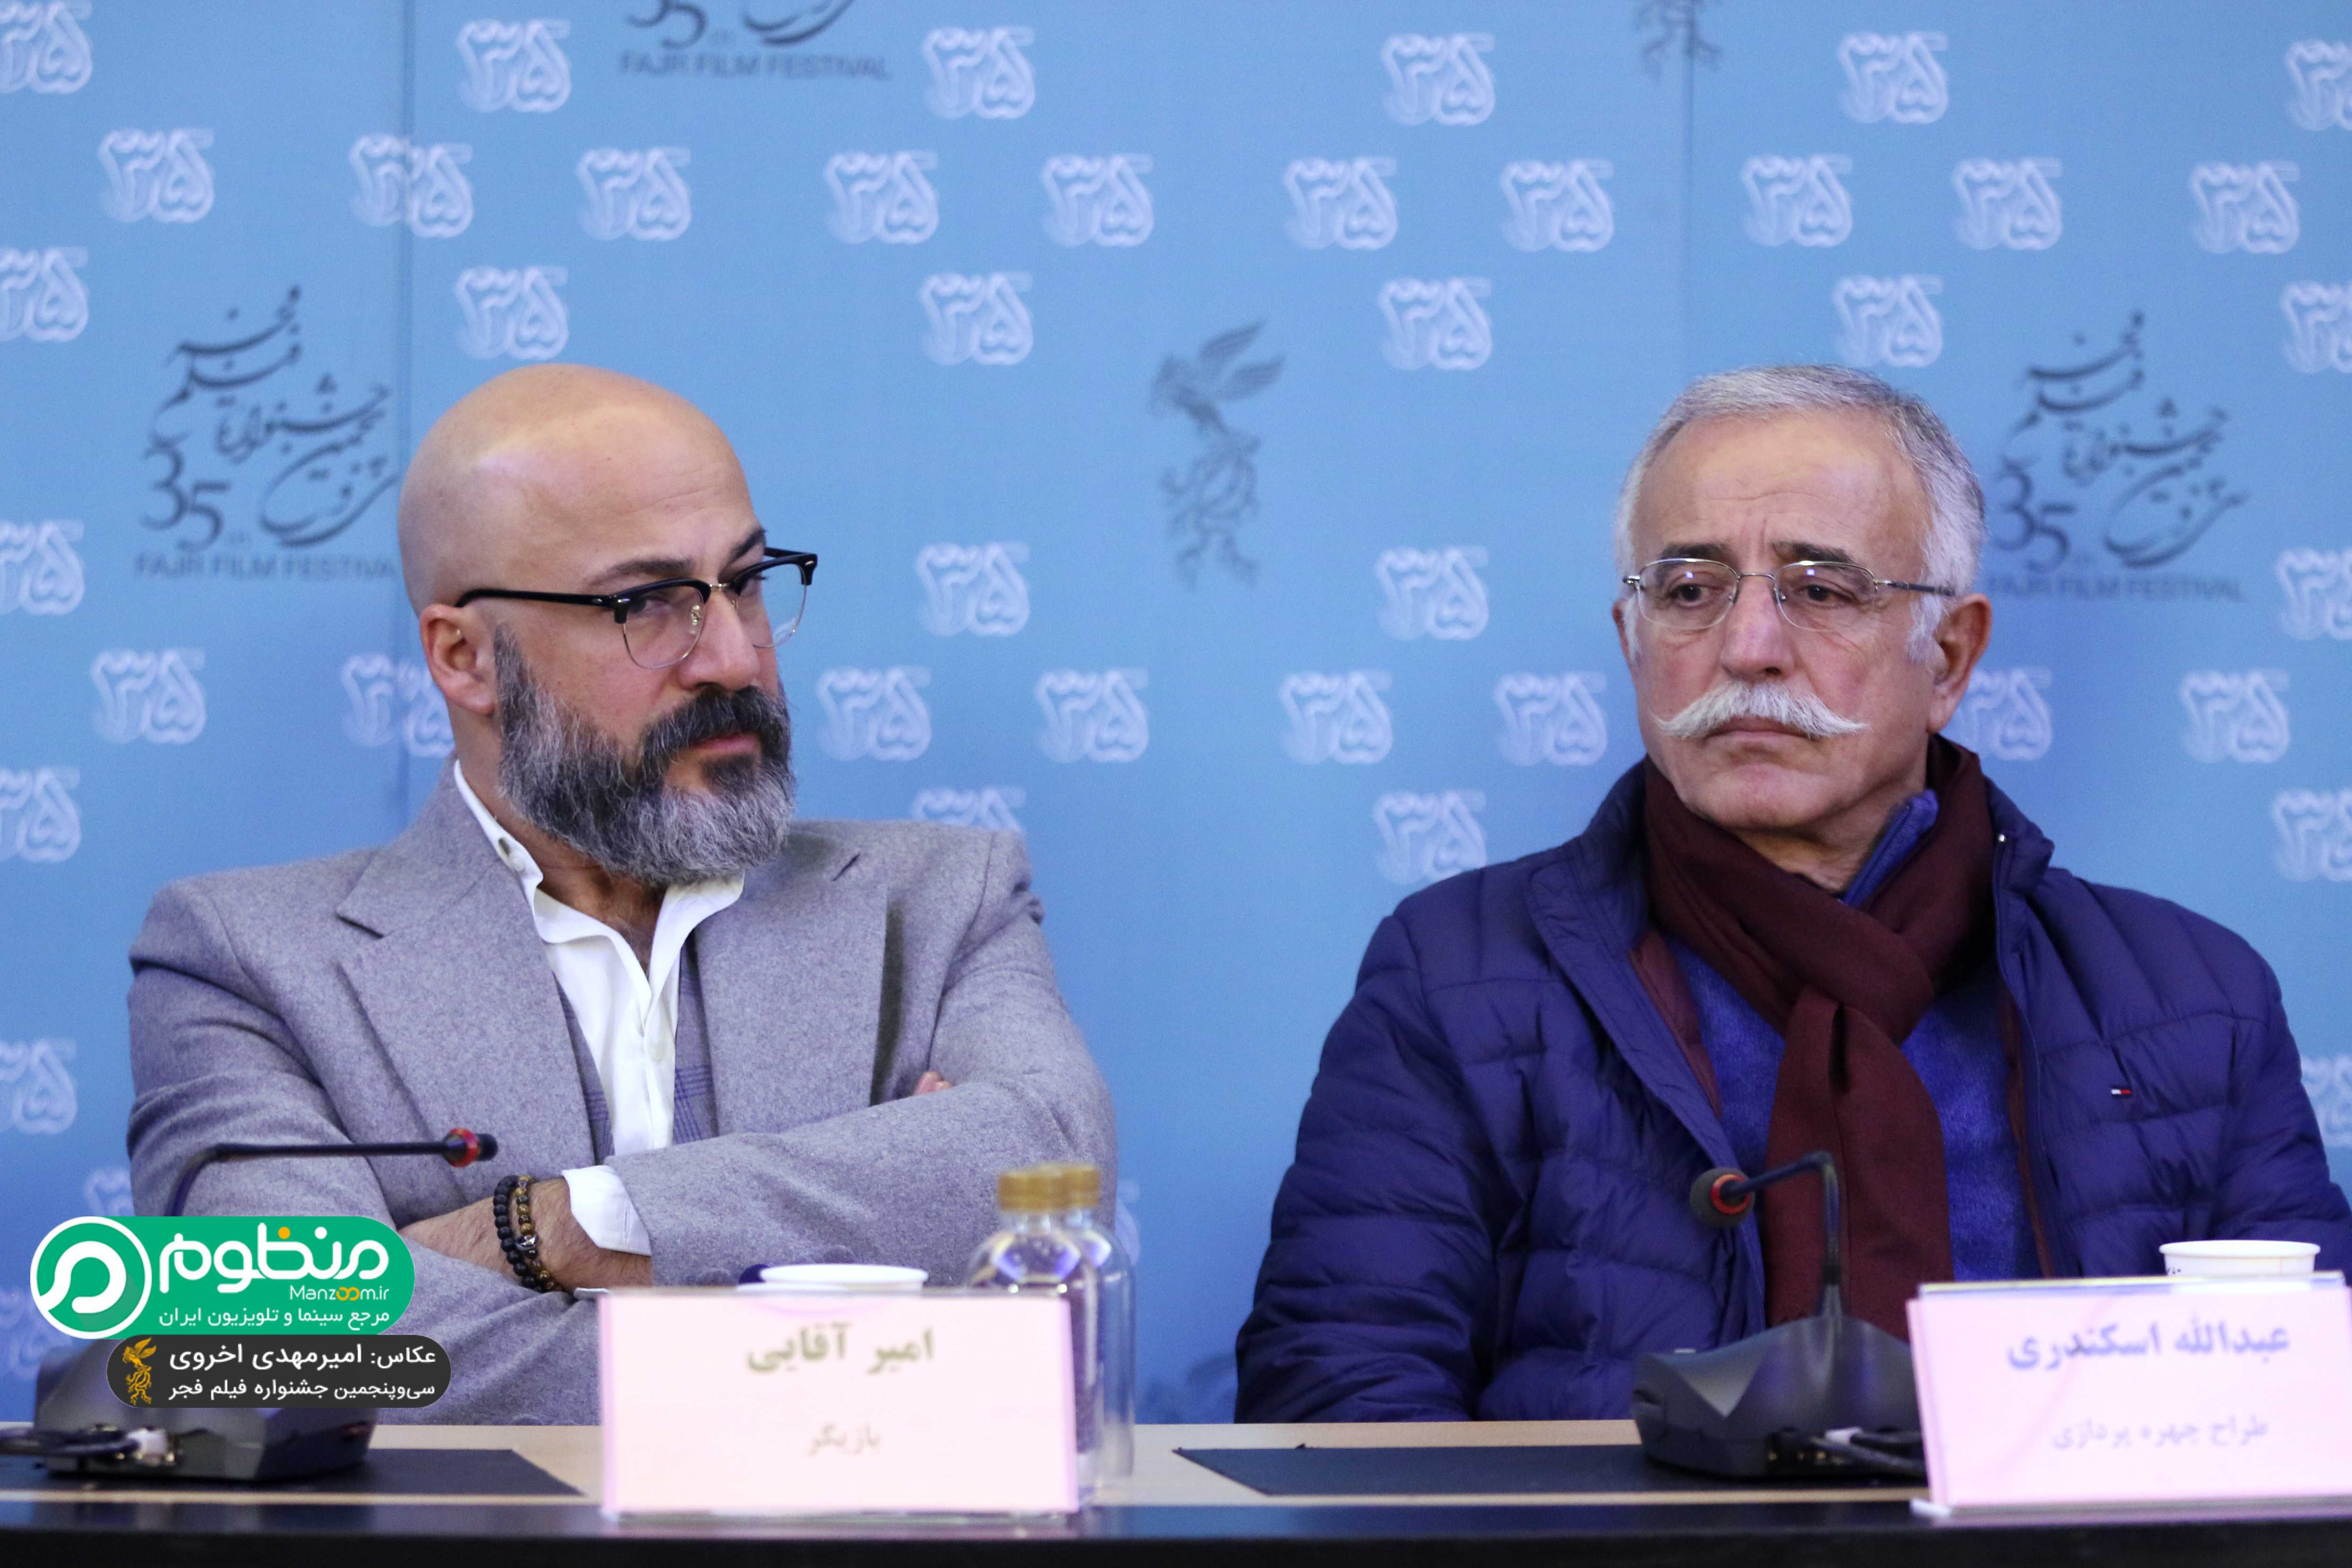 نشست خبری فیلم سینمایی بدون تاریخ بدون امضاء با حضور عبدالله اسکندری و امیر آقایی